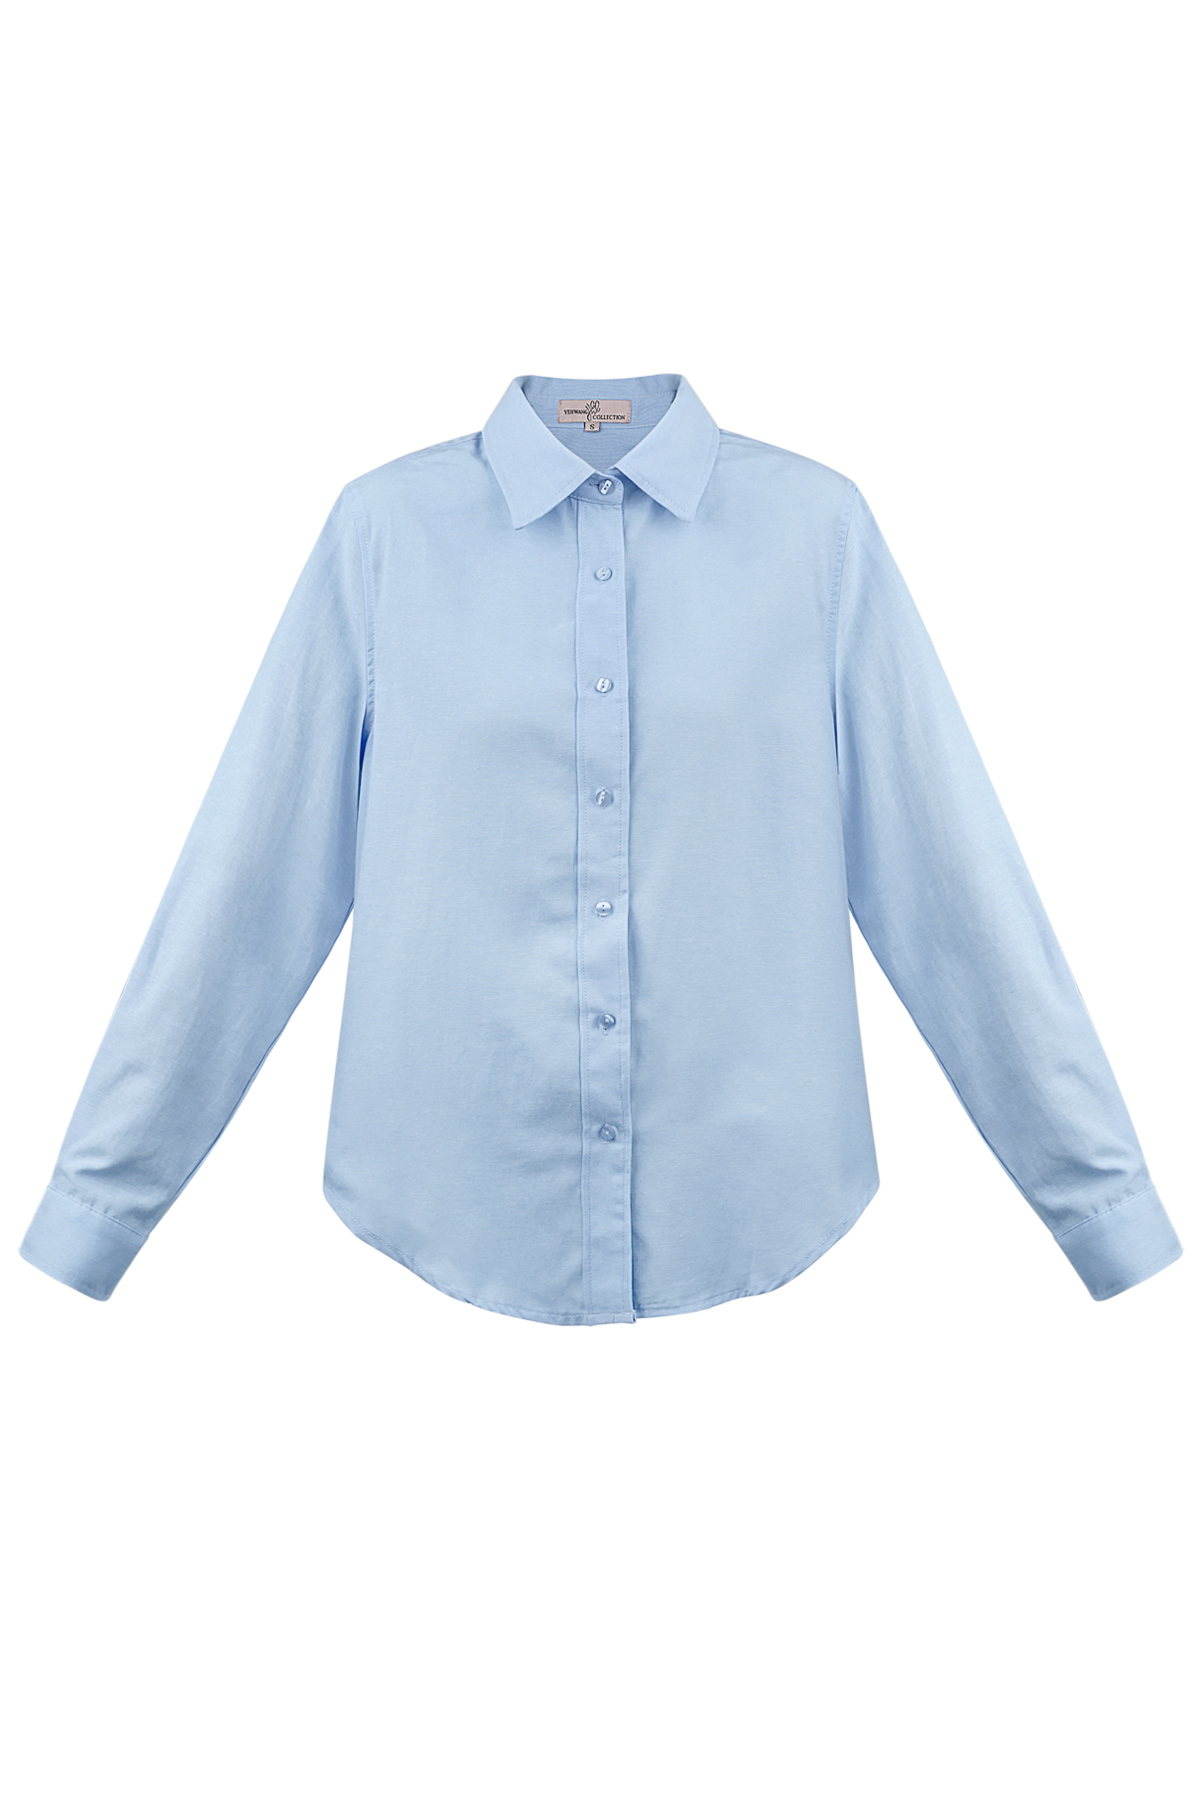 Blusa básica lisa - azul h5 